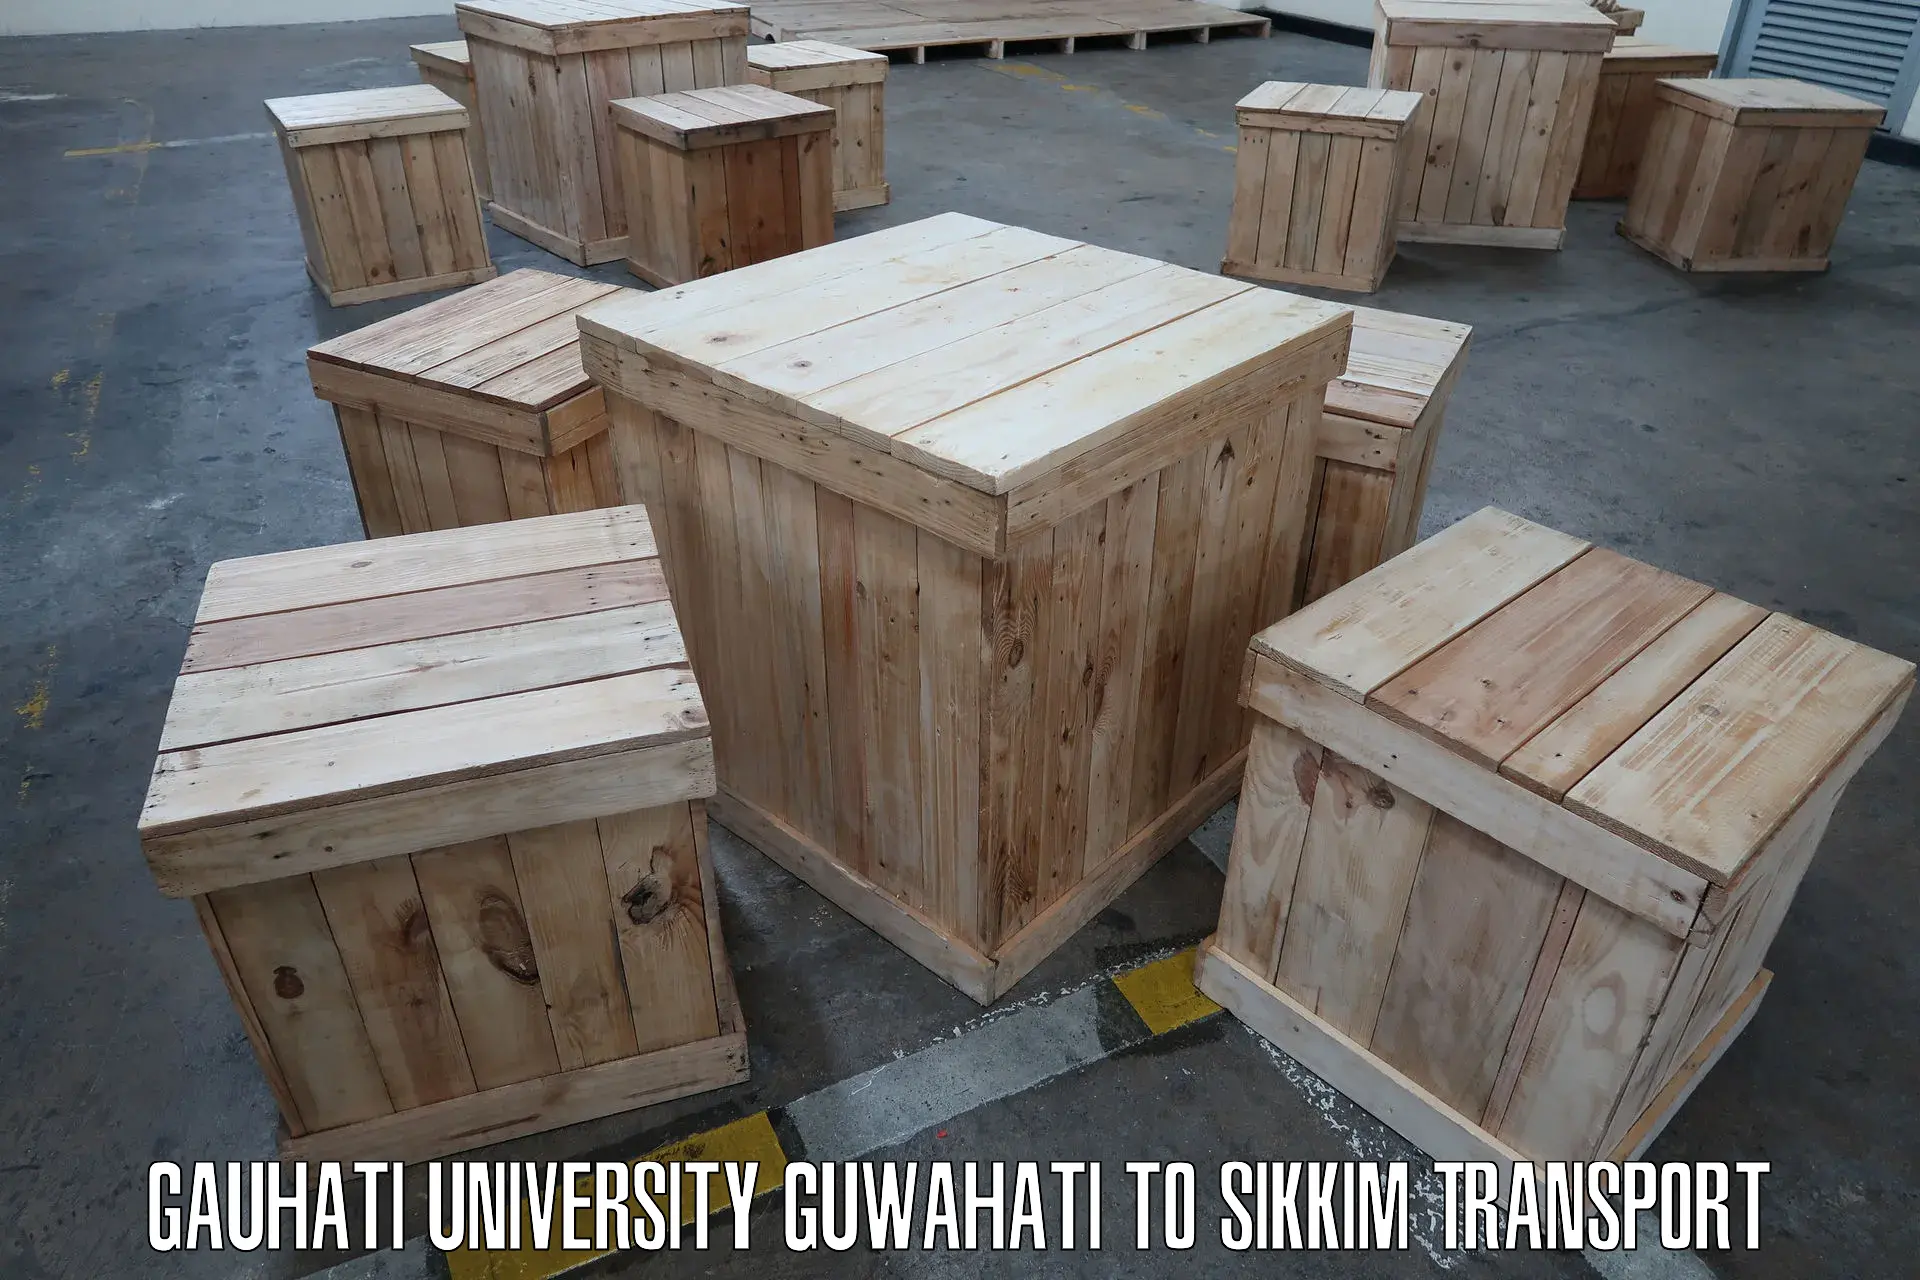 Furniture transport service Gauhati University Guwahati to Singtam